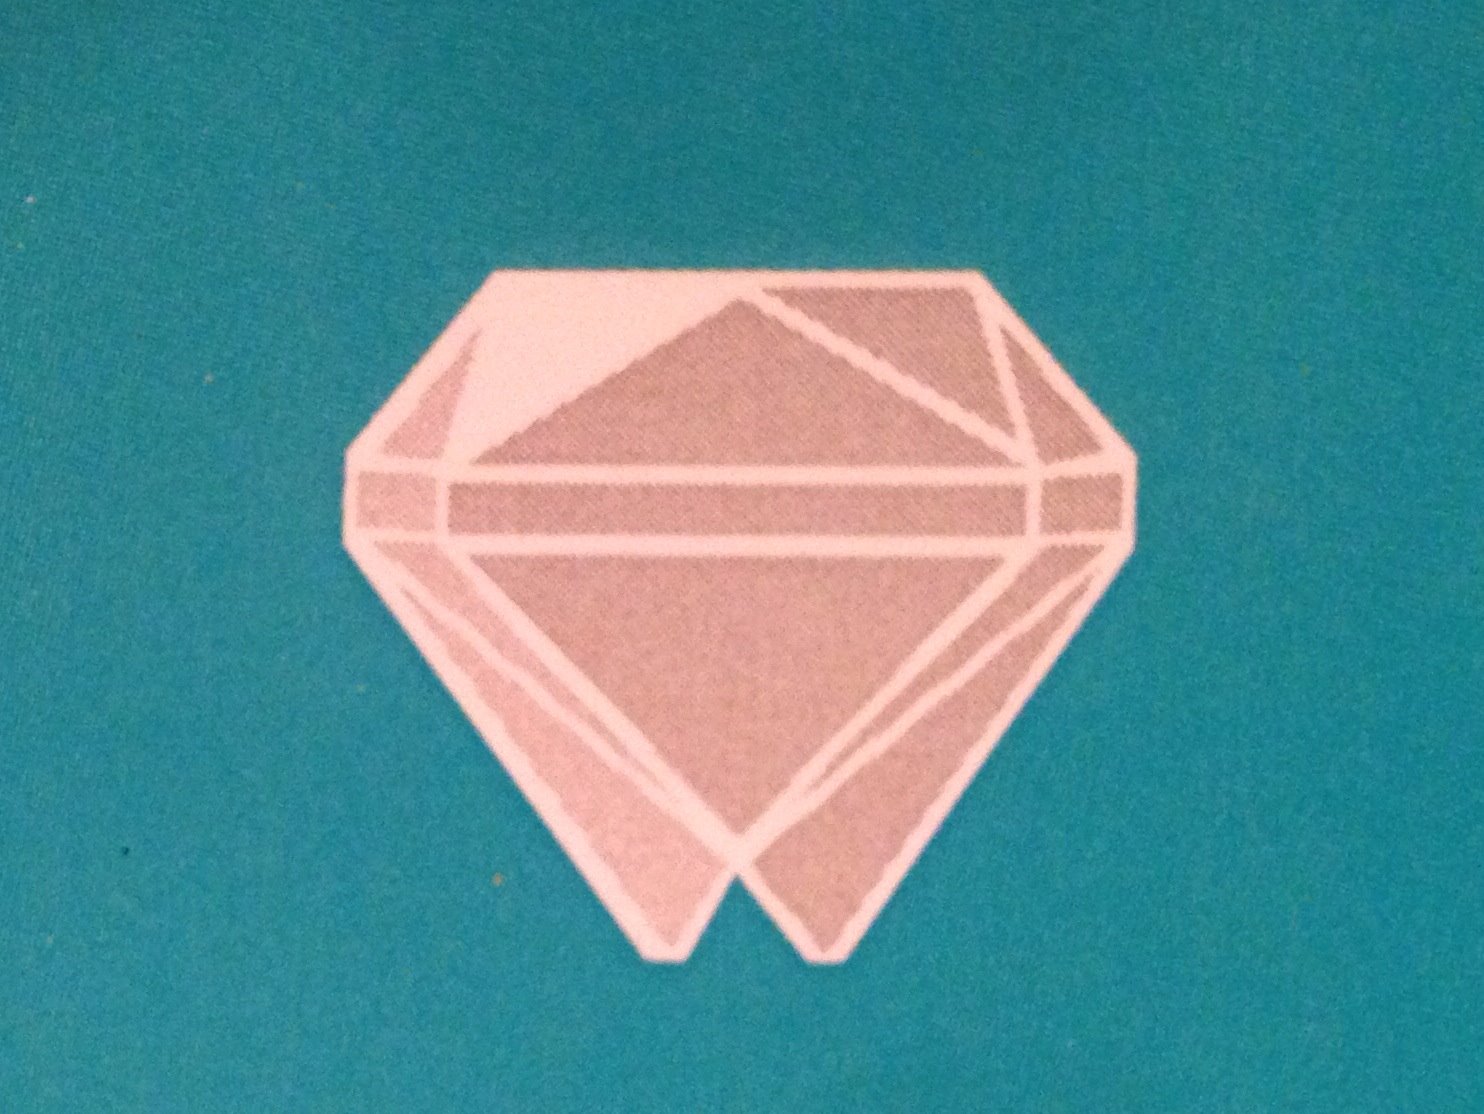 Company logo of Diamond State Dentistry